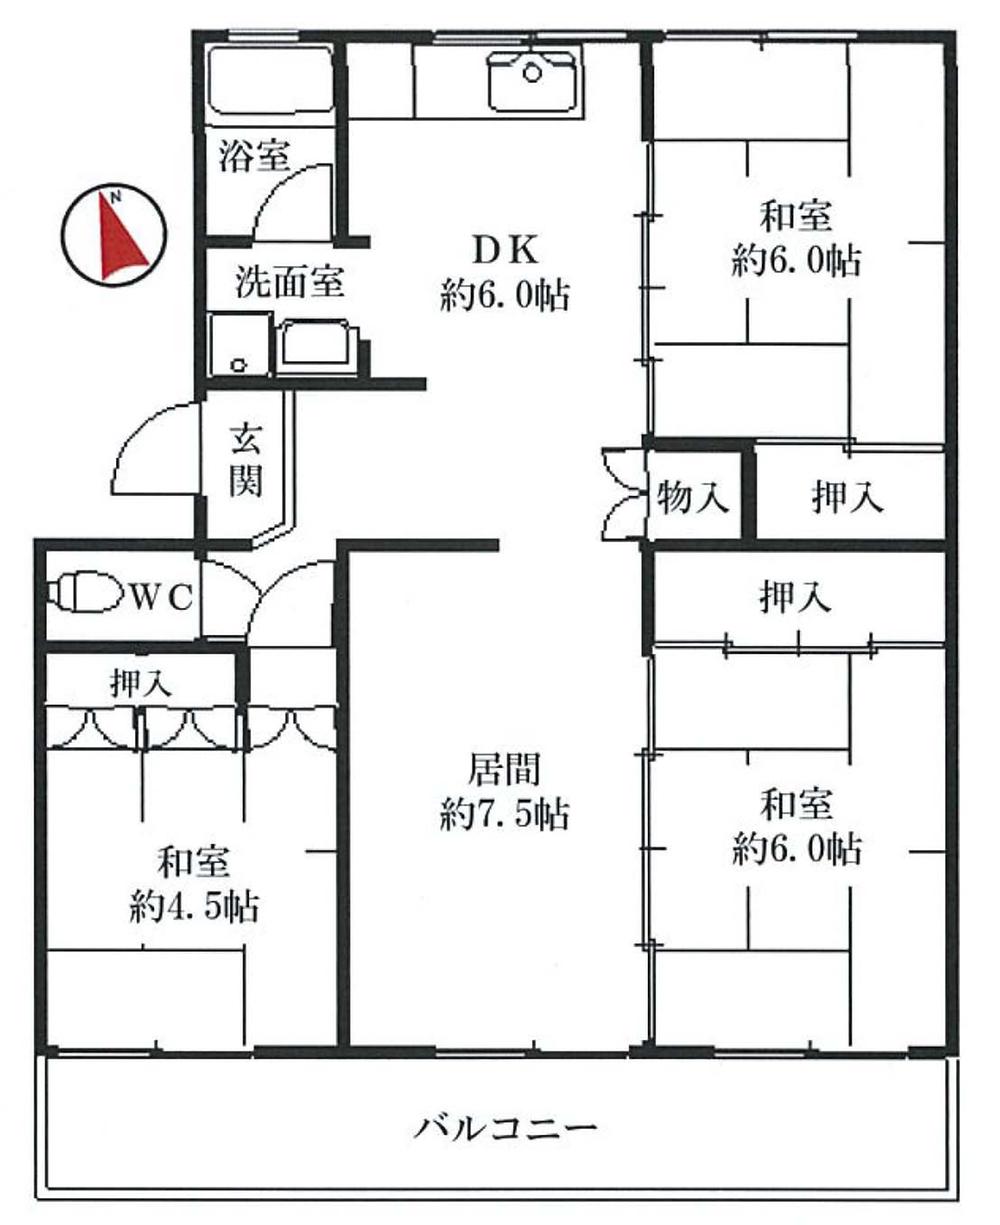 Floor plan. 4DK, Price 4.2 million yen, Occupied area 64.35 sq m